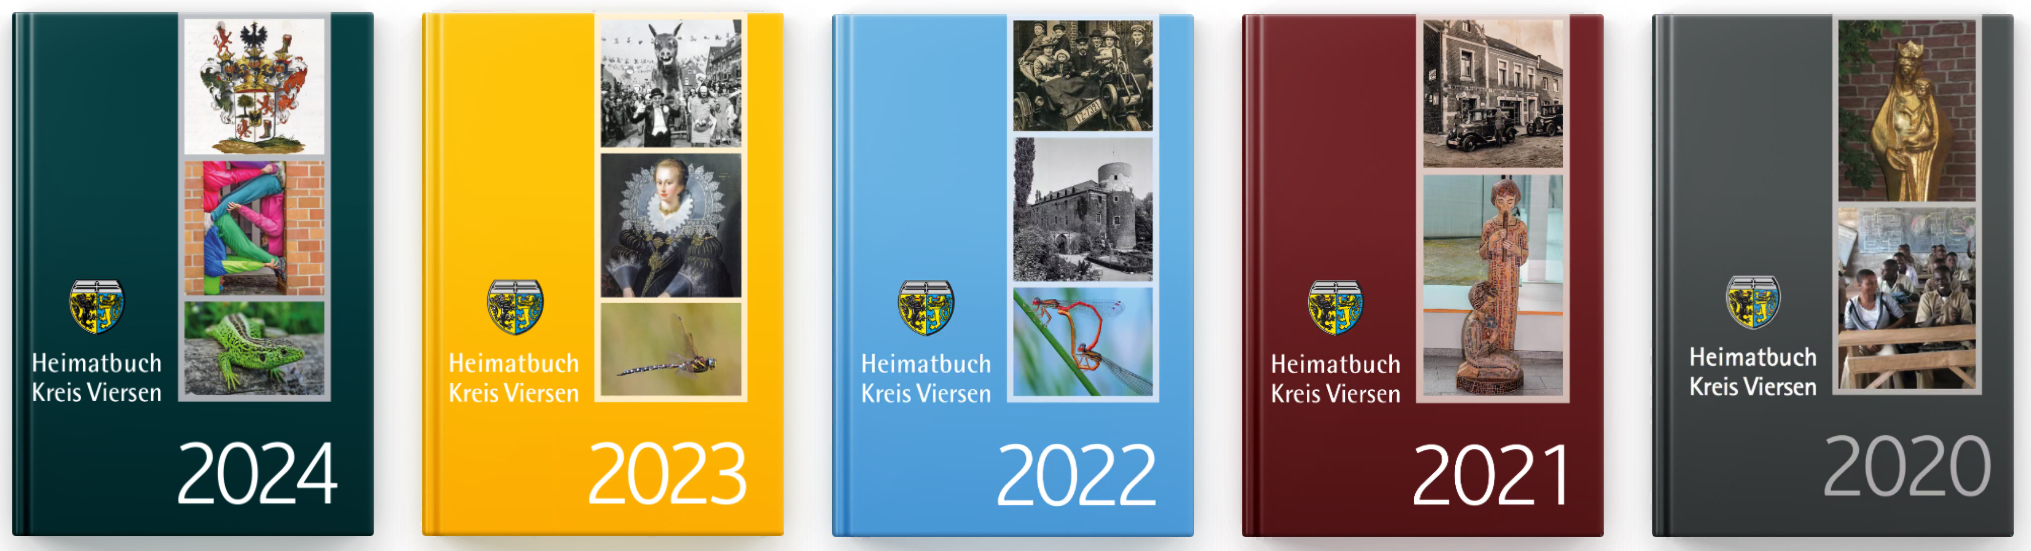 Heimatbücher 2020-2024